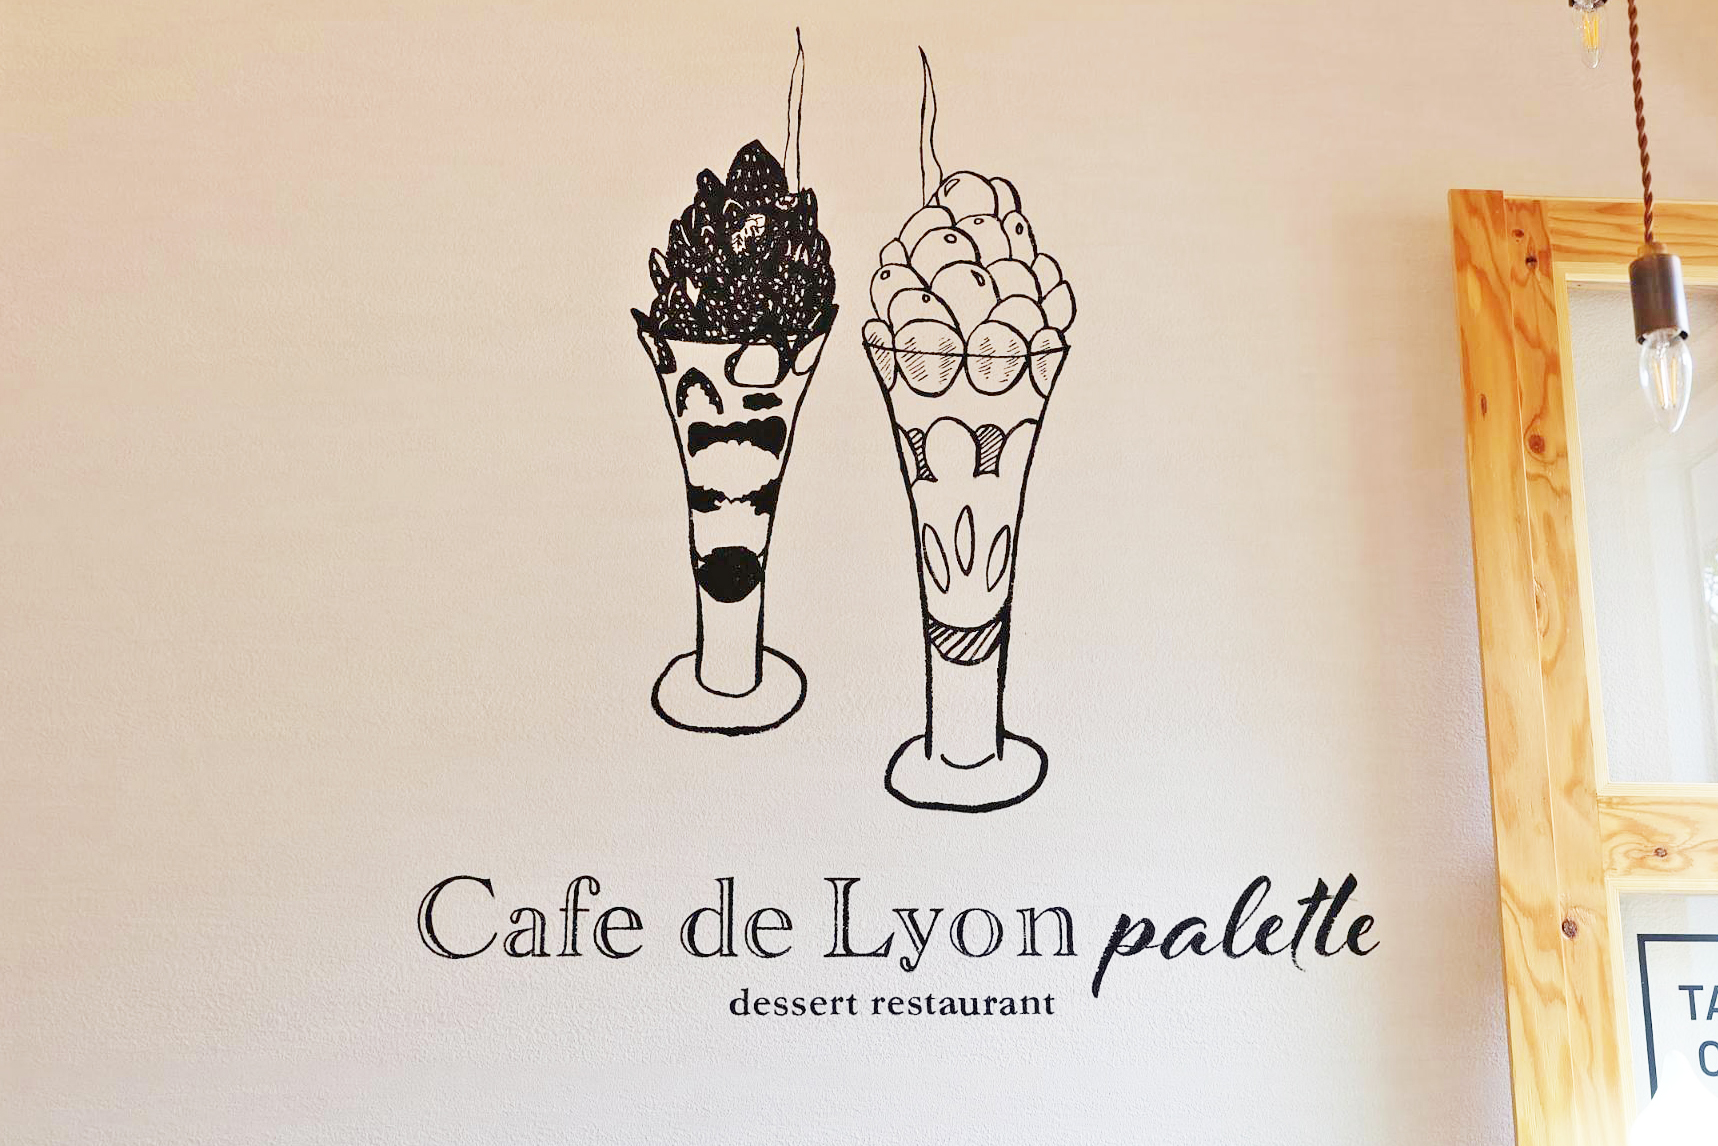 Cafe de Lyon palette